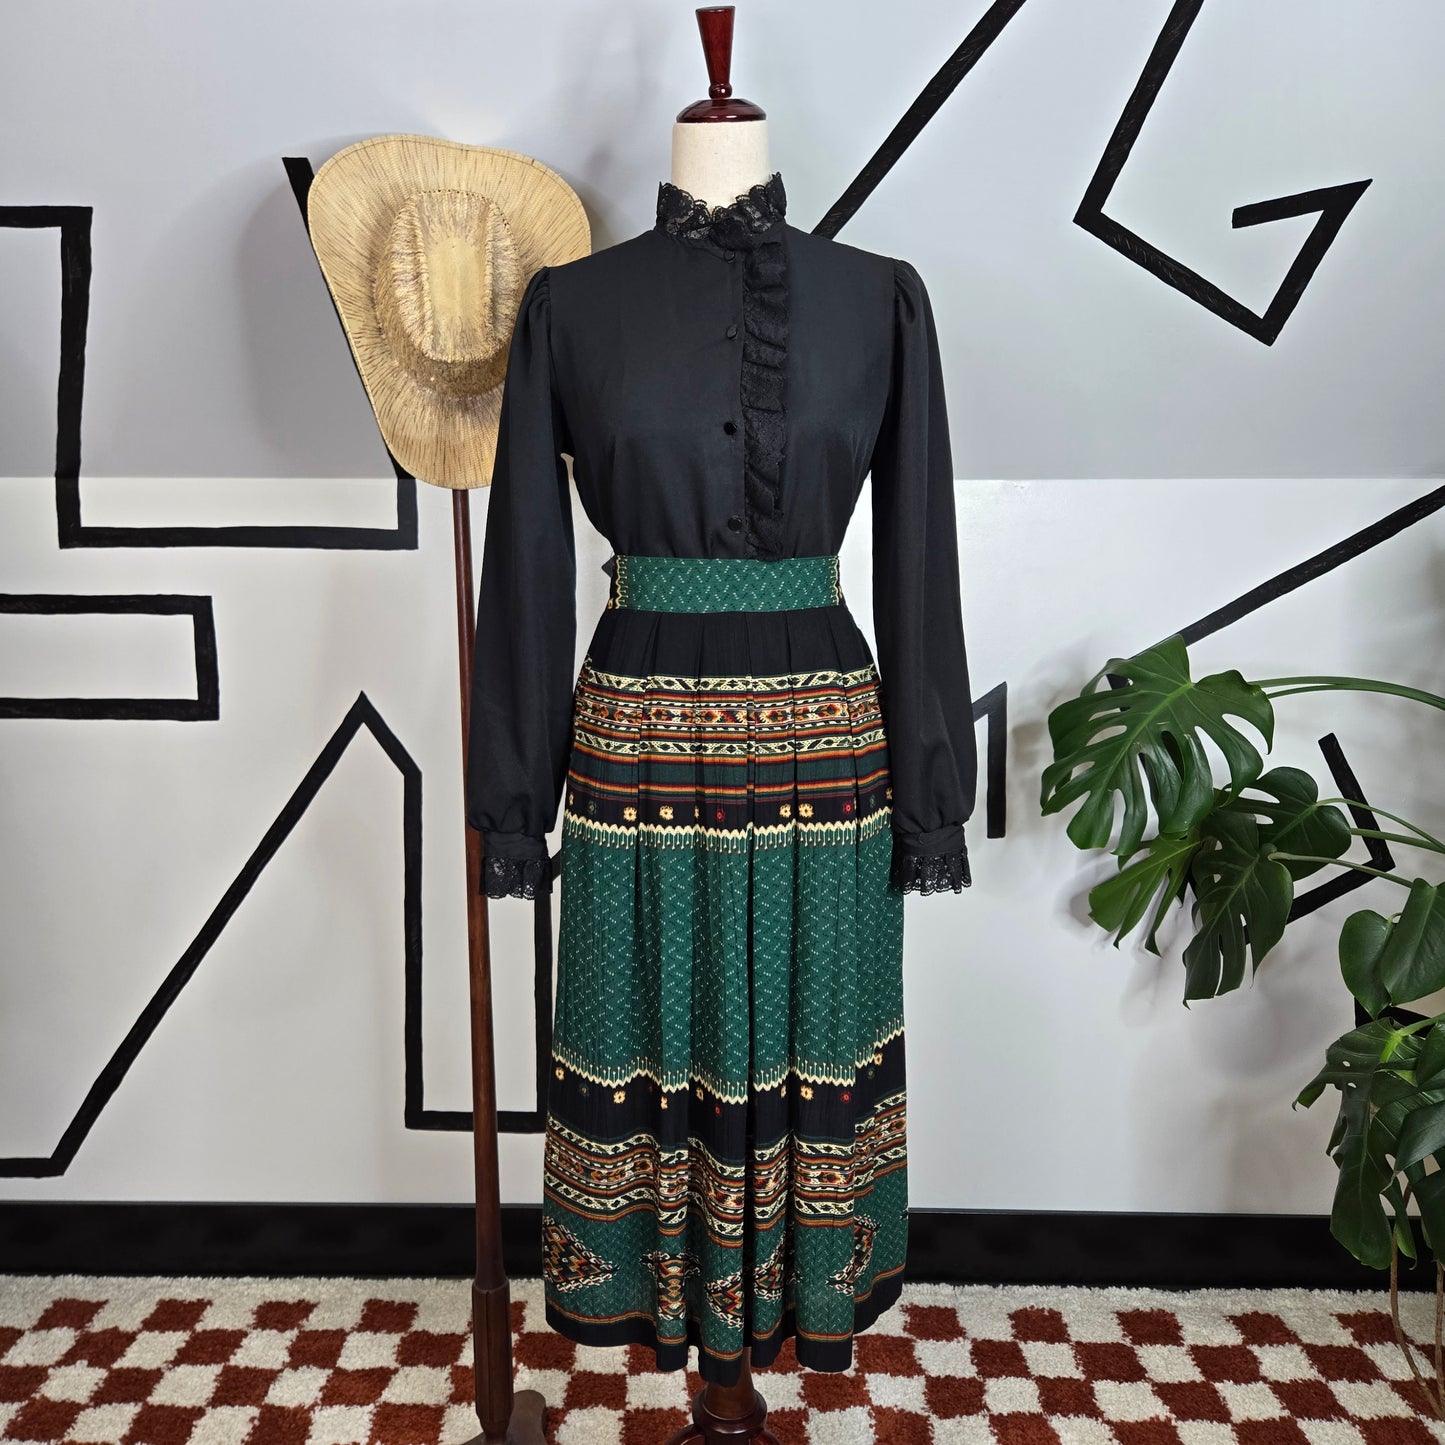 Petite Sophisticate Vintage Western Midi Skirt - Medium